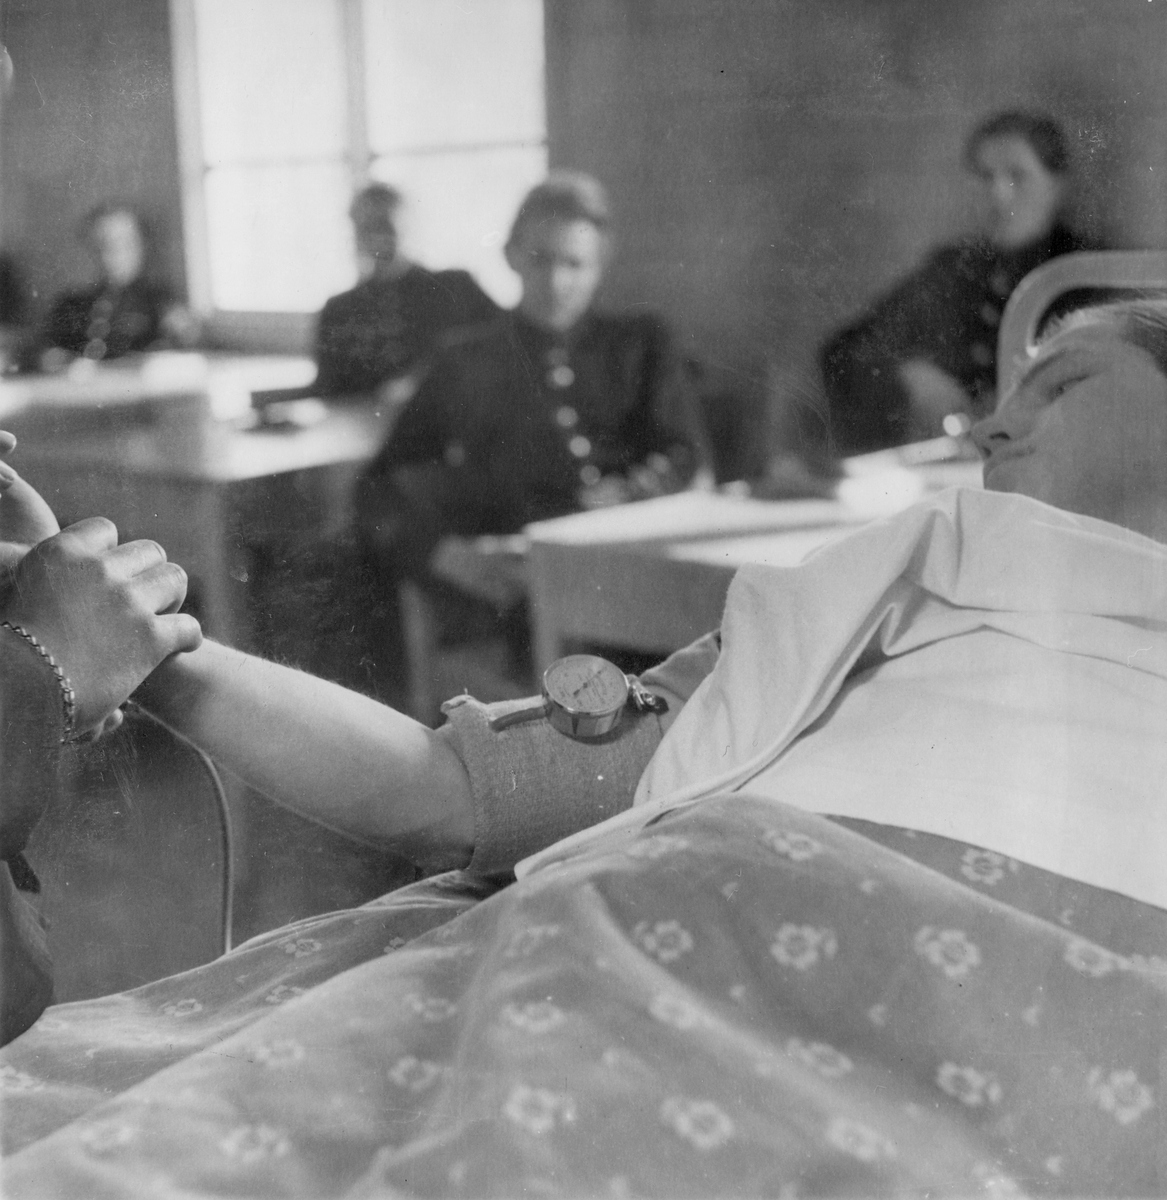 Mätning av blodtryck under sjukvårdskurs på F 11 Södermanlands flygflottilj, 1945. En man i en sjuksäng i skolsal. Elever i skolbänkar i bakgrunden.

Ur fotoalbum "Sjukvårdsskolan 15/1-15/3 1945" från F 11.